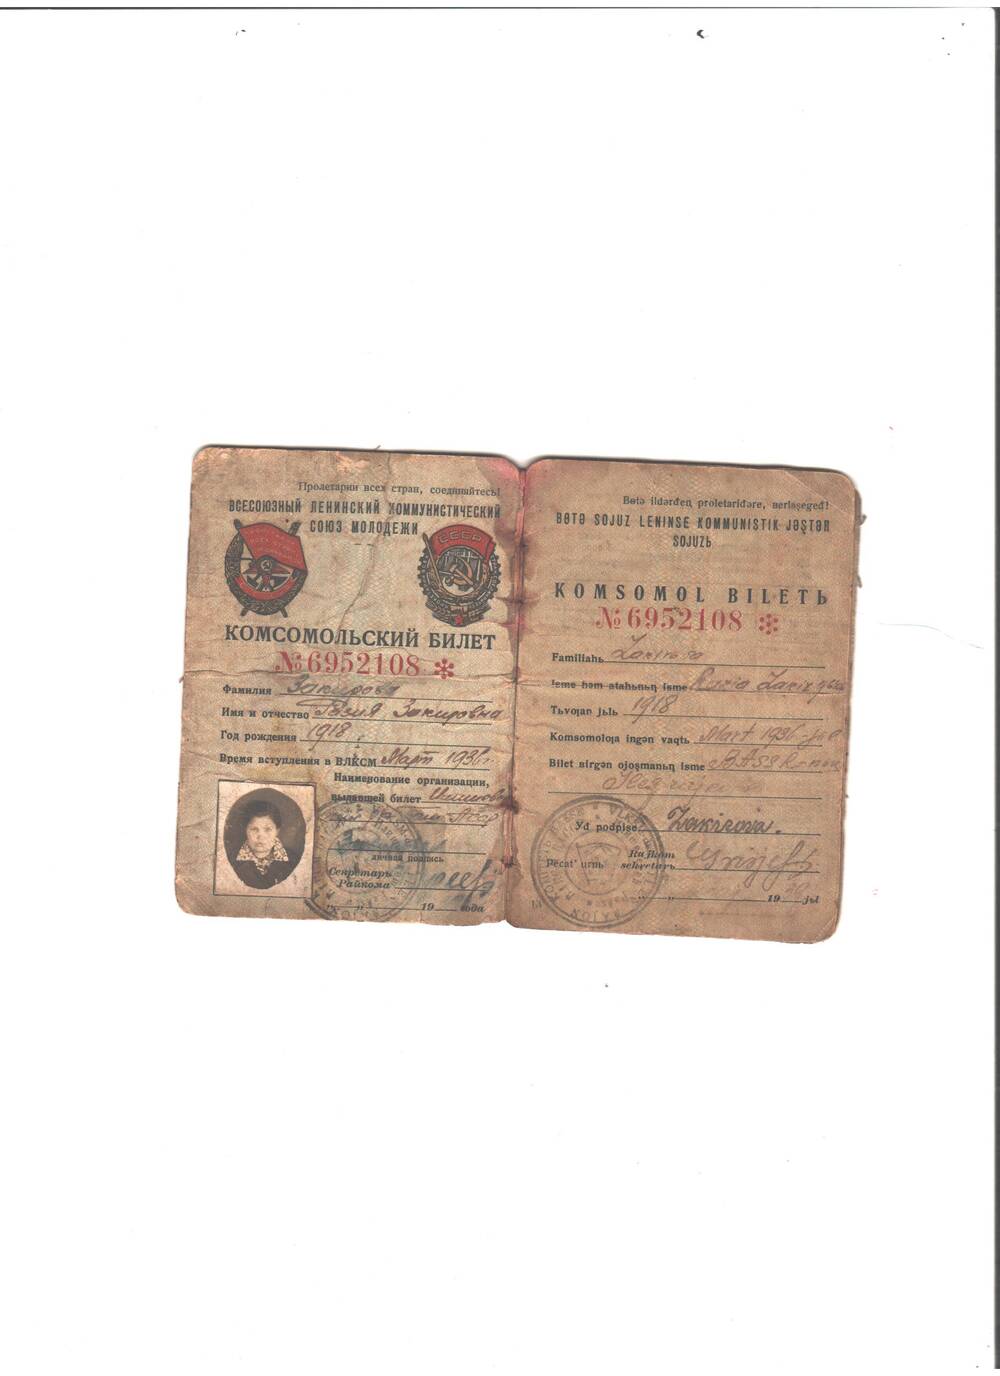 Комсомольский билет № 6952108 на имя Закировой Разии З. выдан март,1936